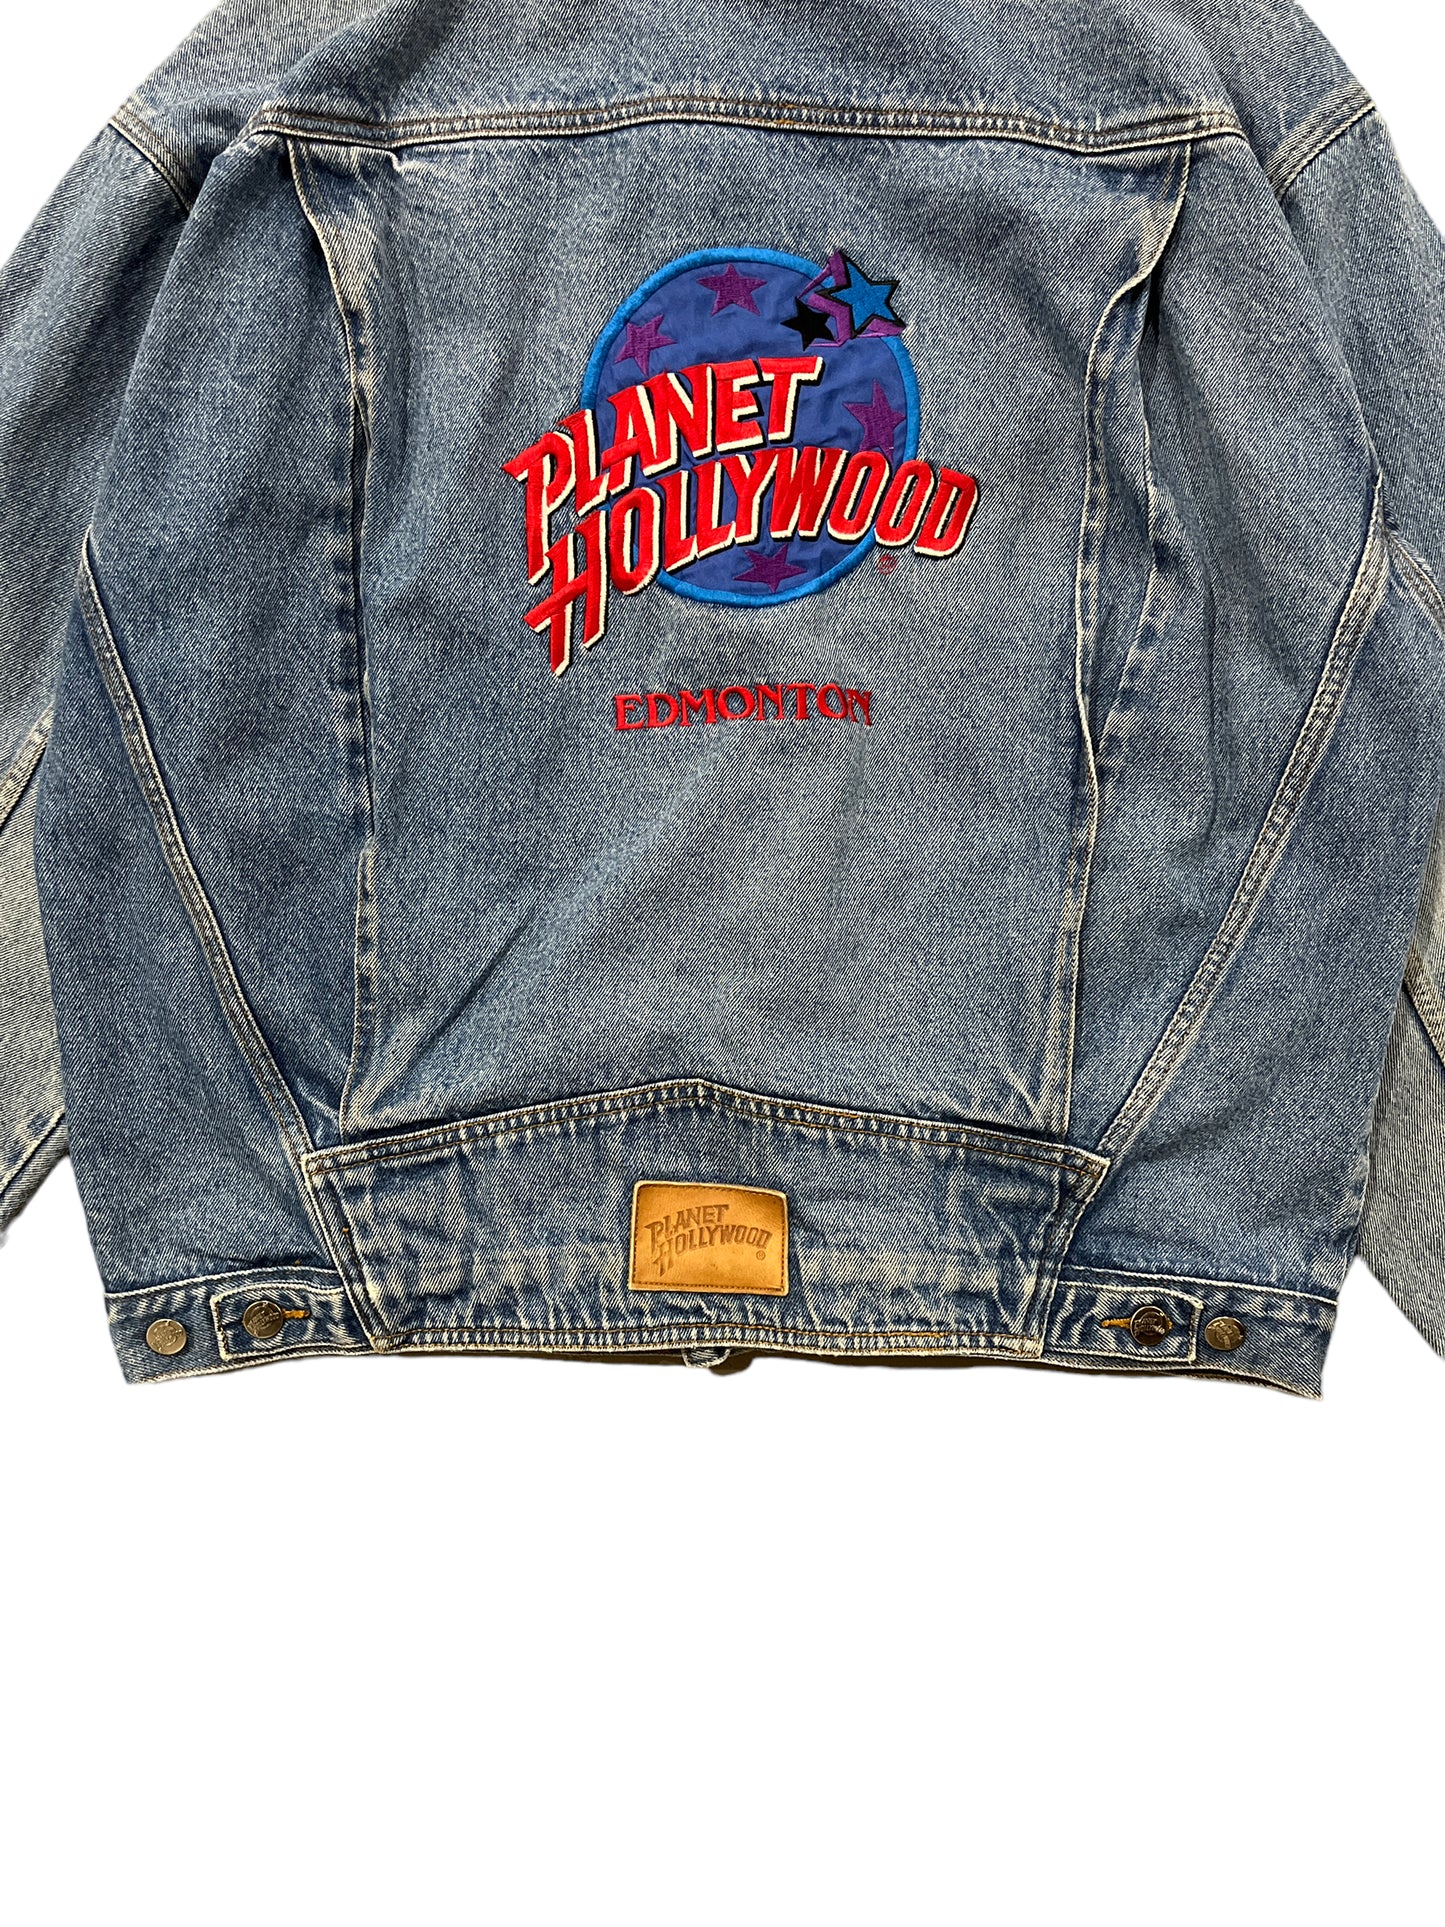 Vintage Planet Hollywood Denim Jacket